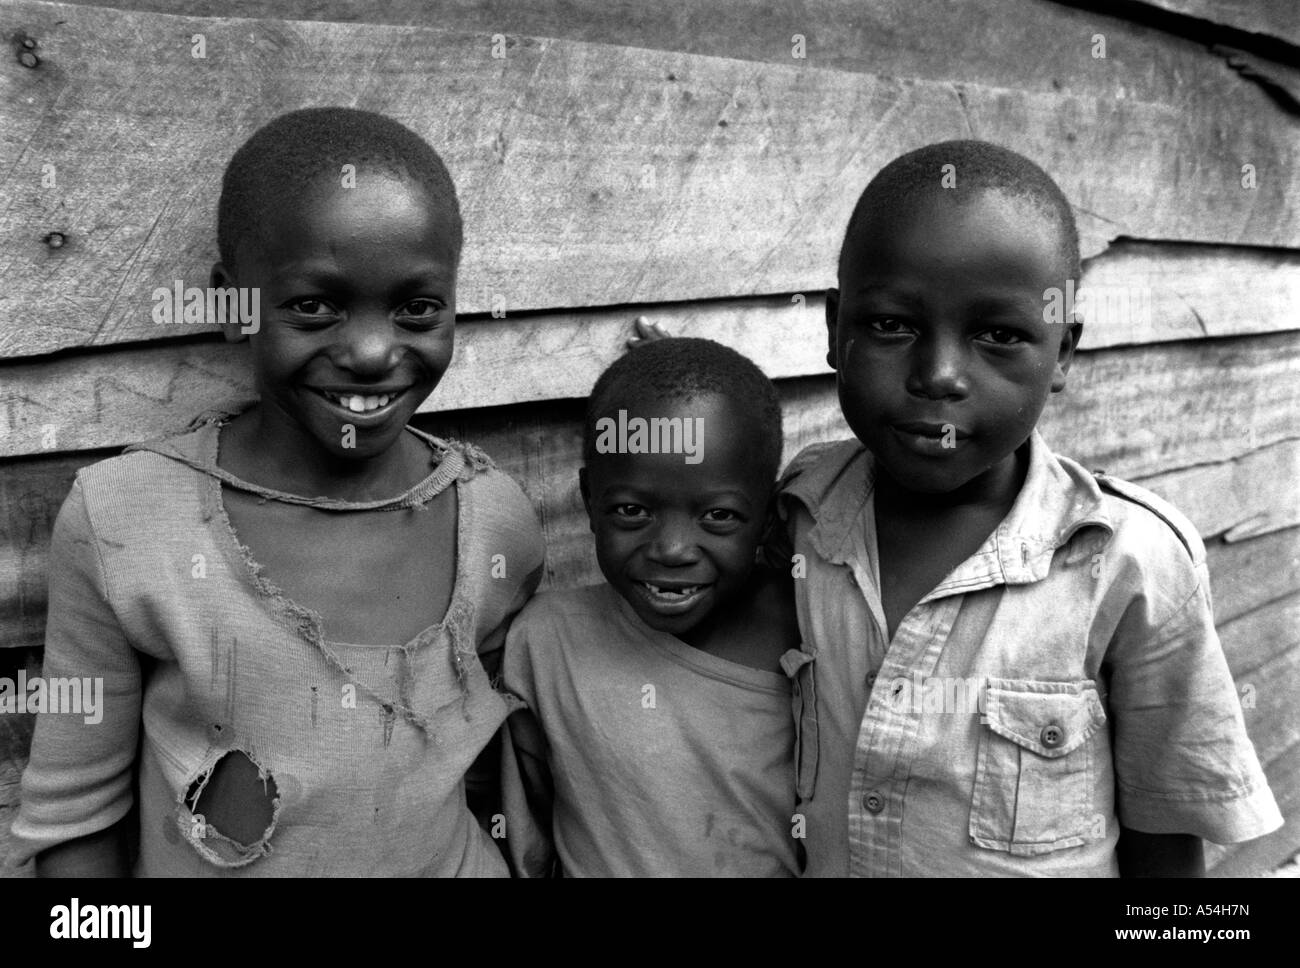 Painet ac1505 noir et blanc d'enfants des bidonvilles de Nairobi Kenya Afrique images p.c. au pays en développement, pays économiquement moins Banque D'Images